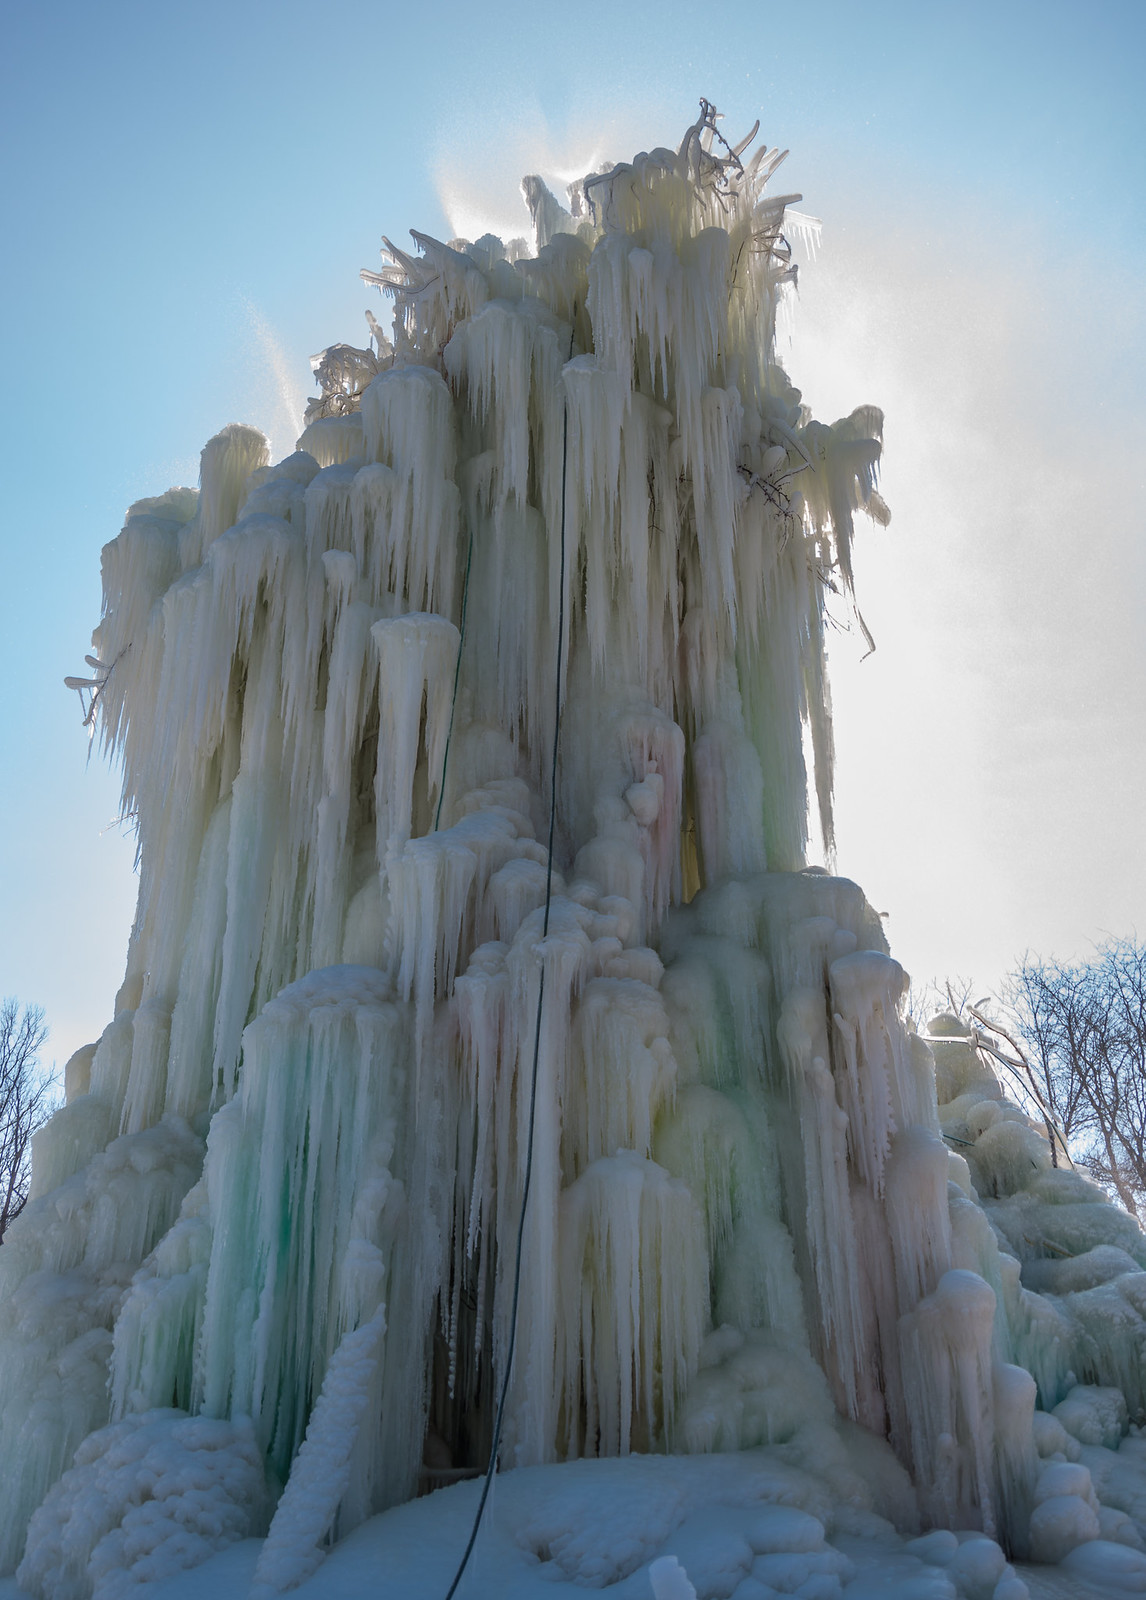 Veal's Ice Tree